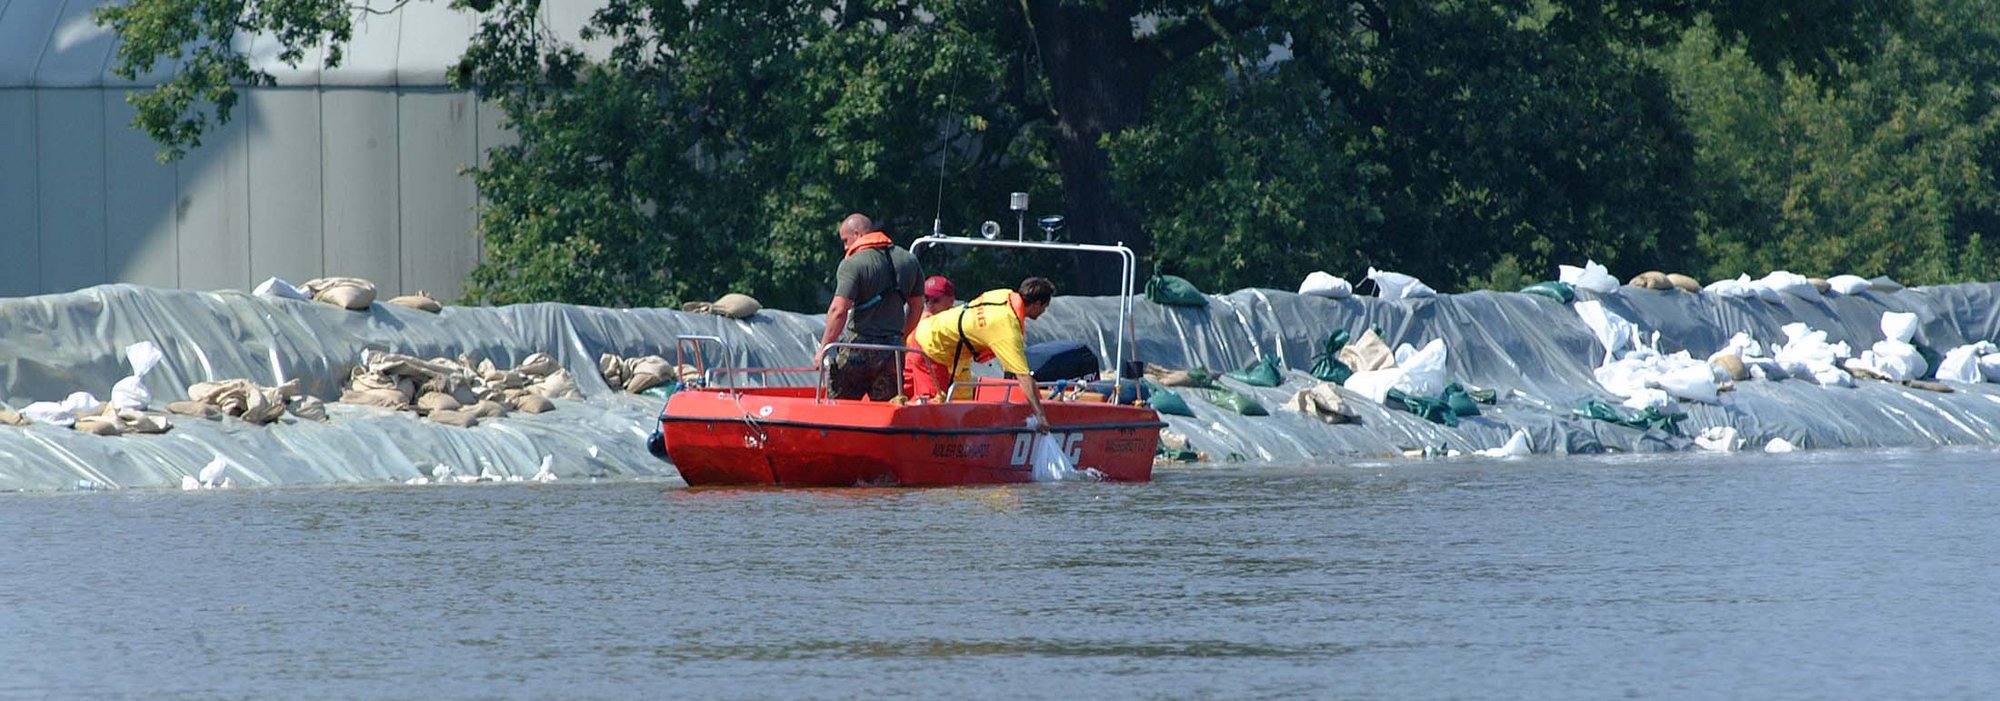 DLRG-Rettungsschwimmer in einem Boot auf einem Gewässer.